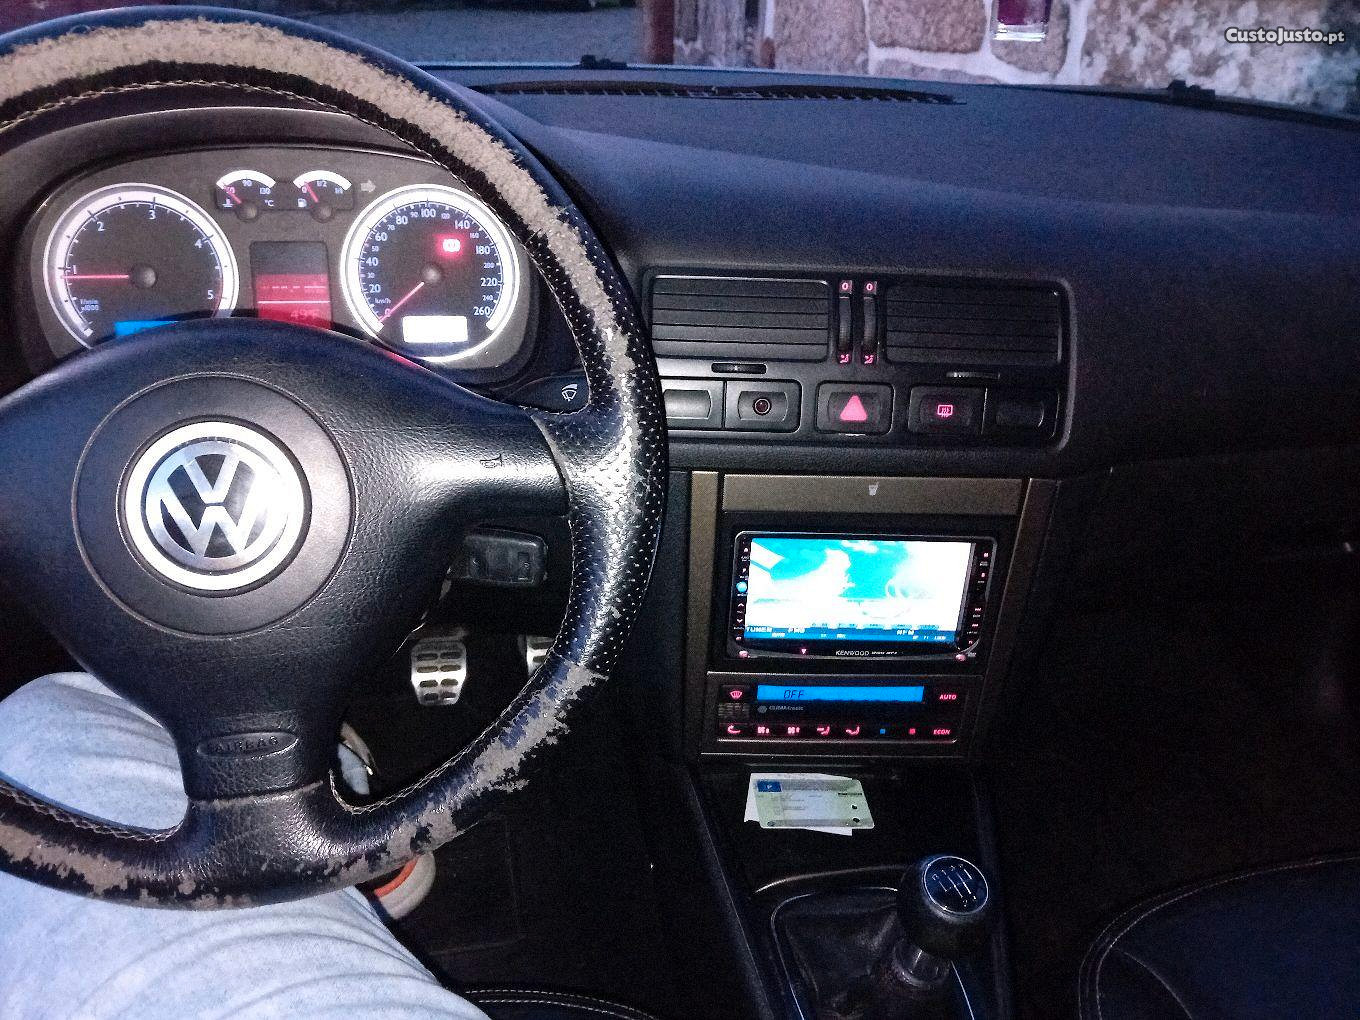 VW Bora pd 150